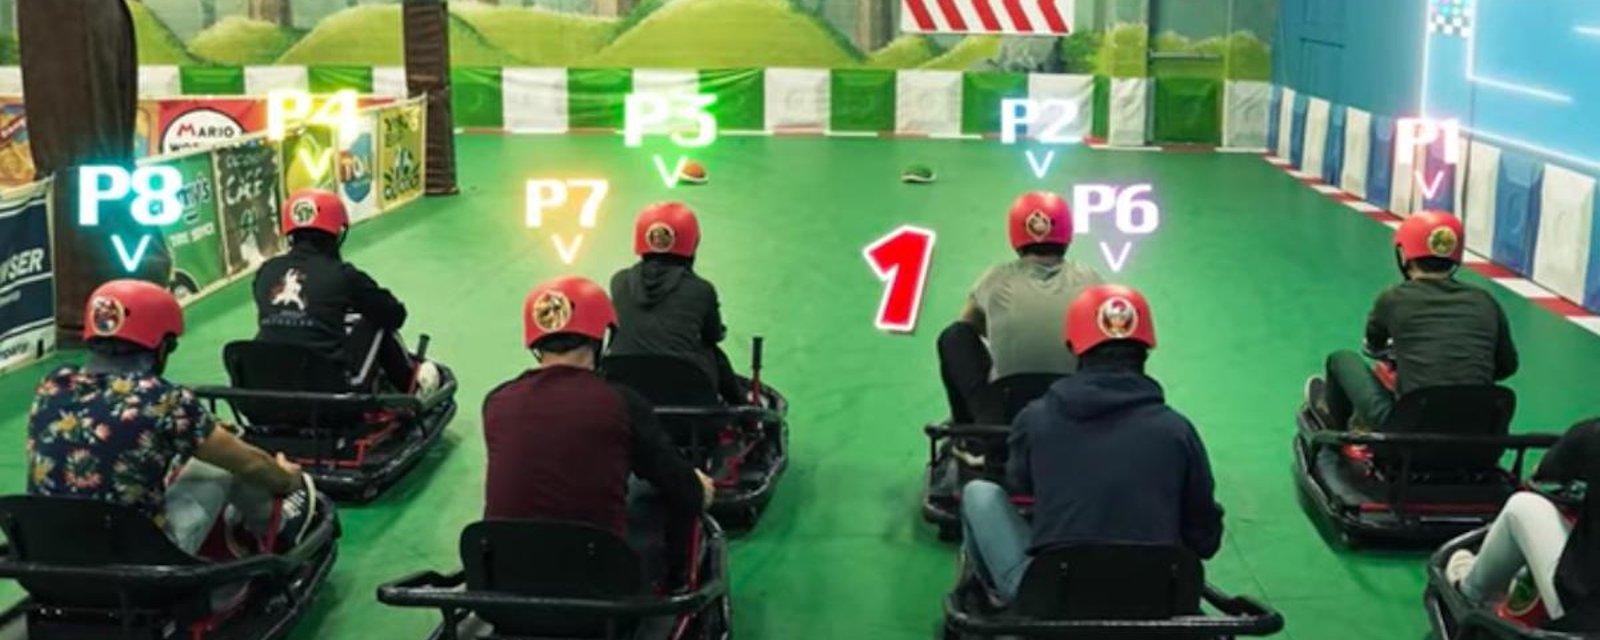 L’activité à ne pas manquer en ce moment: un VRAI Mario Kart!